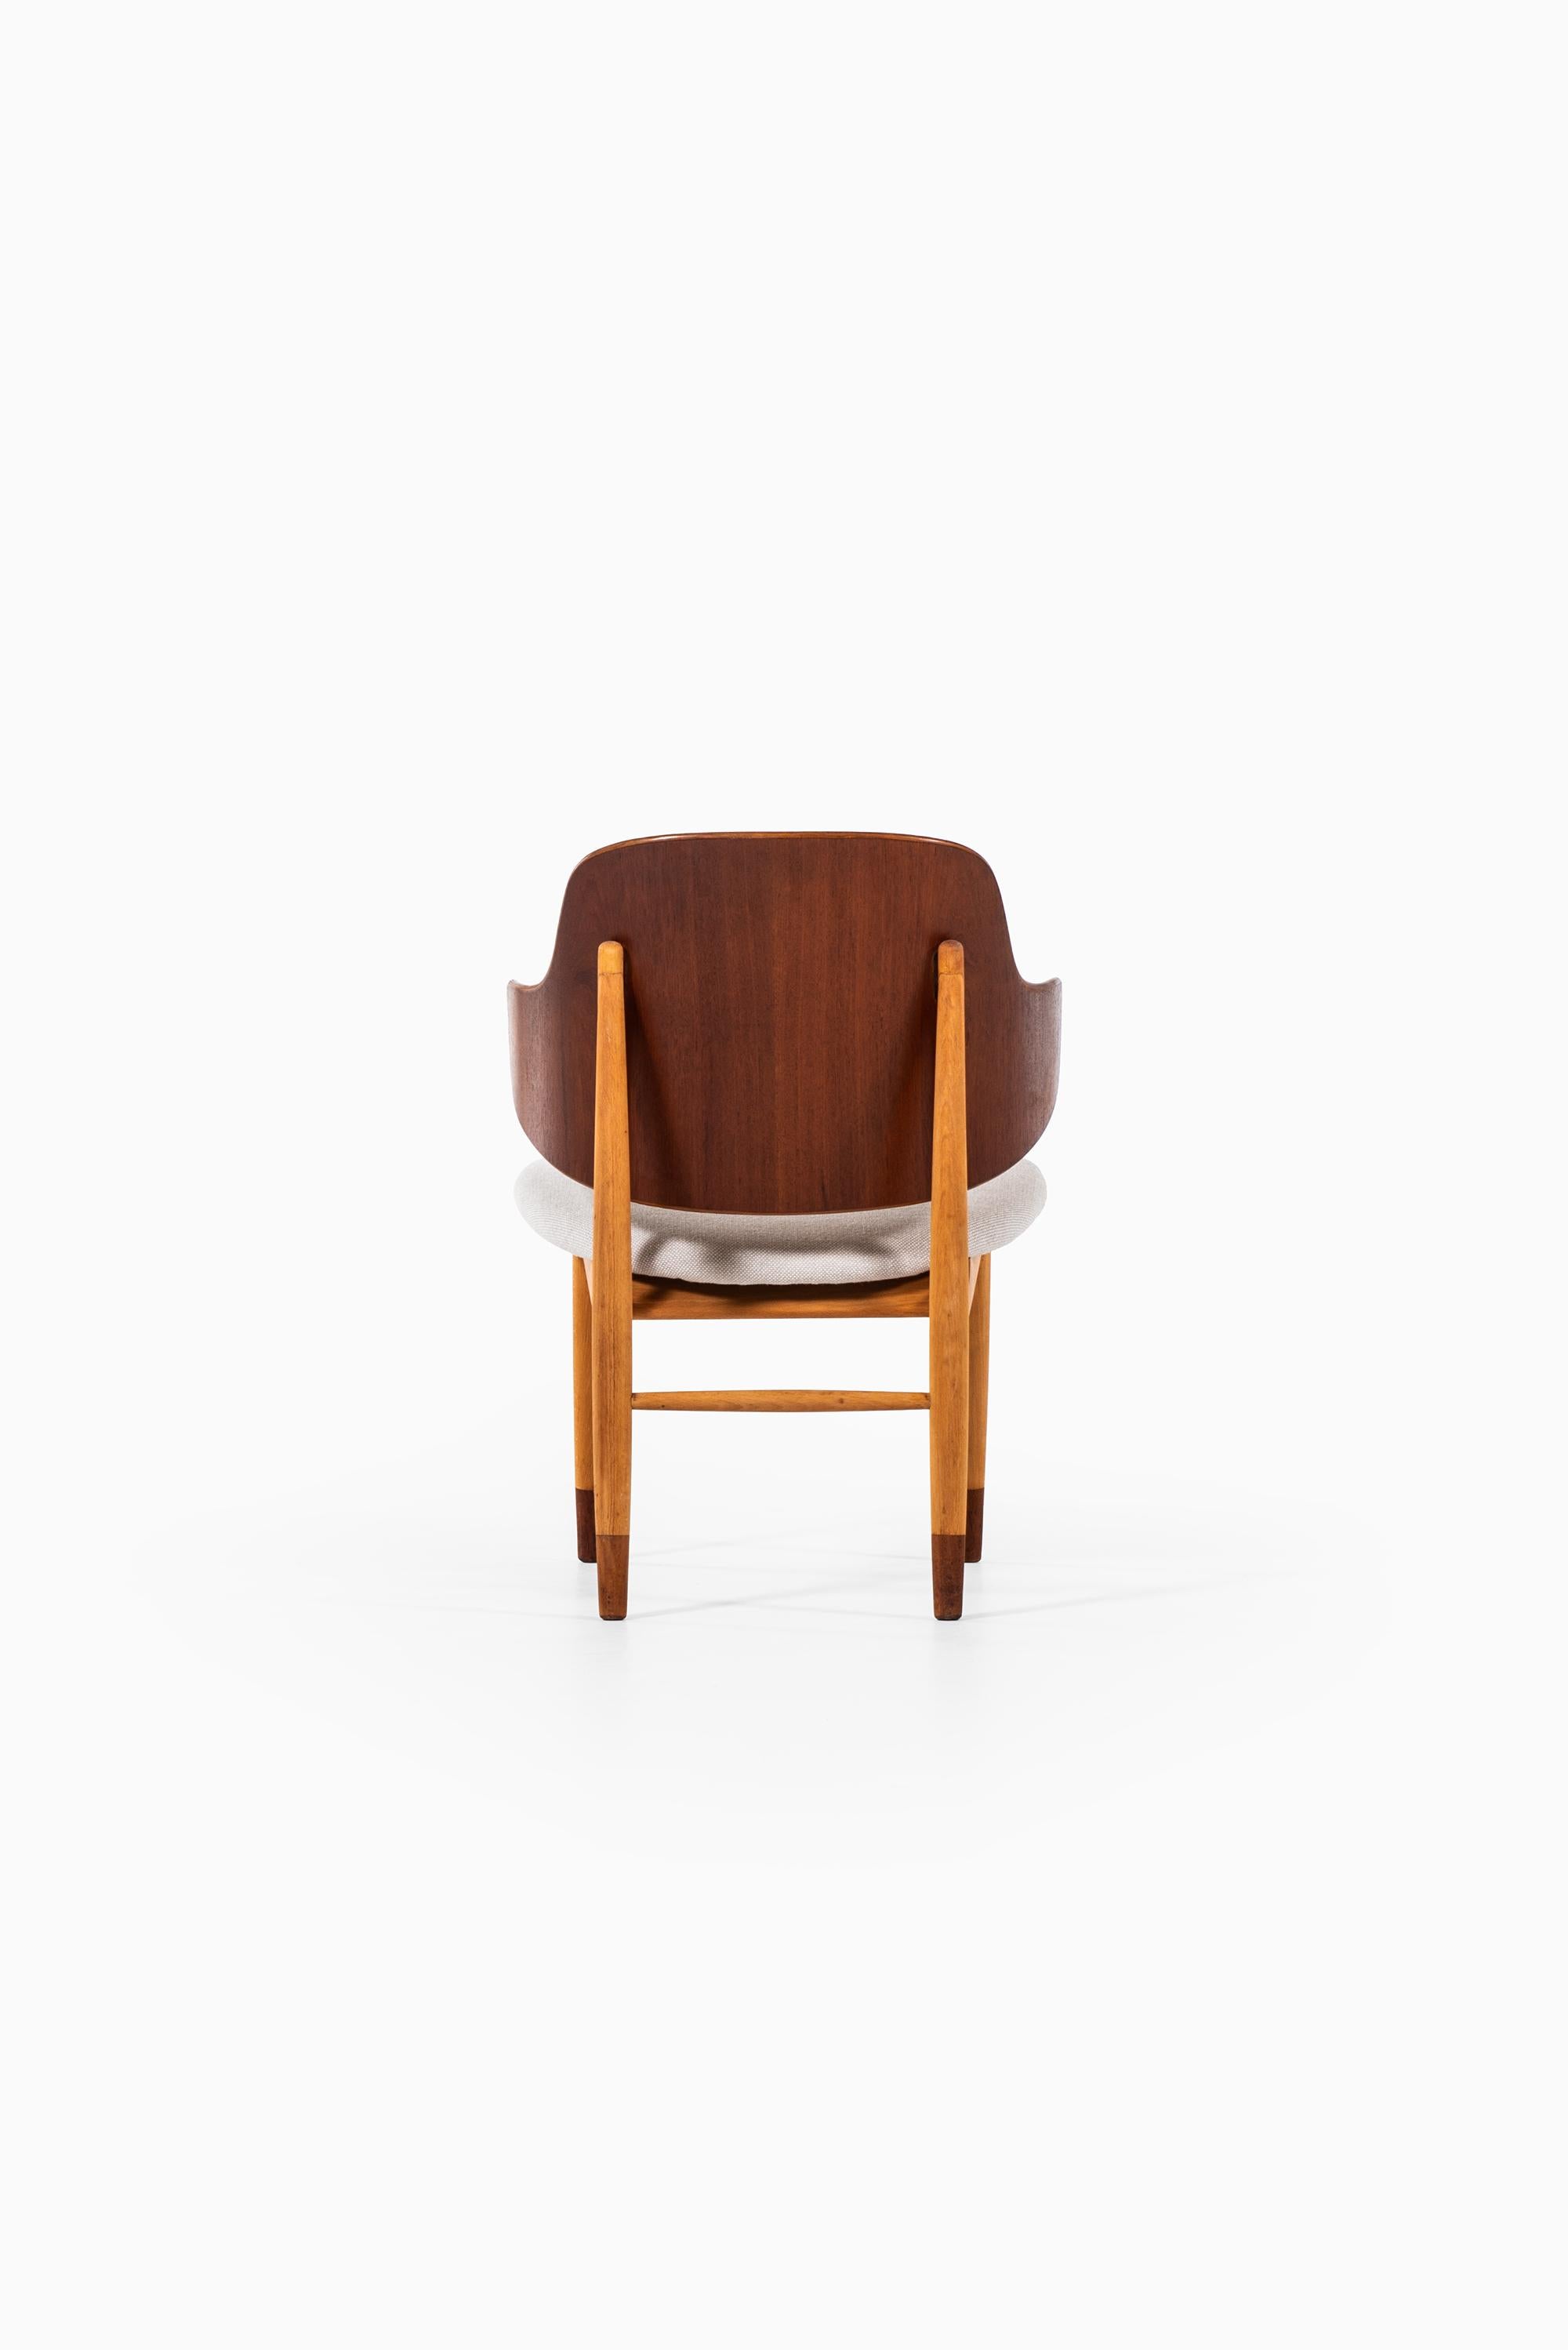 Ib Kofod-Larsen Shell Easy Chair Produced by Christensen & Larsen in Denmark 1